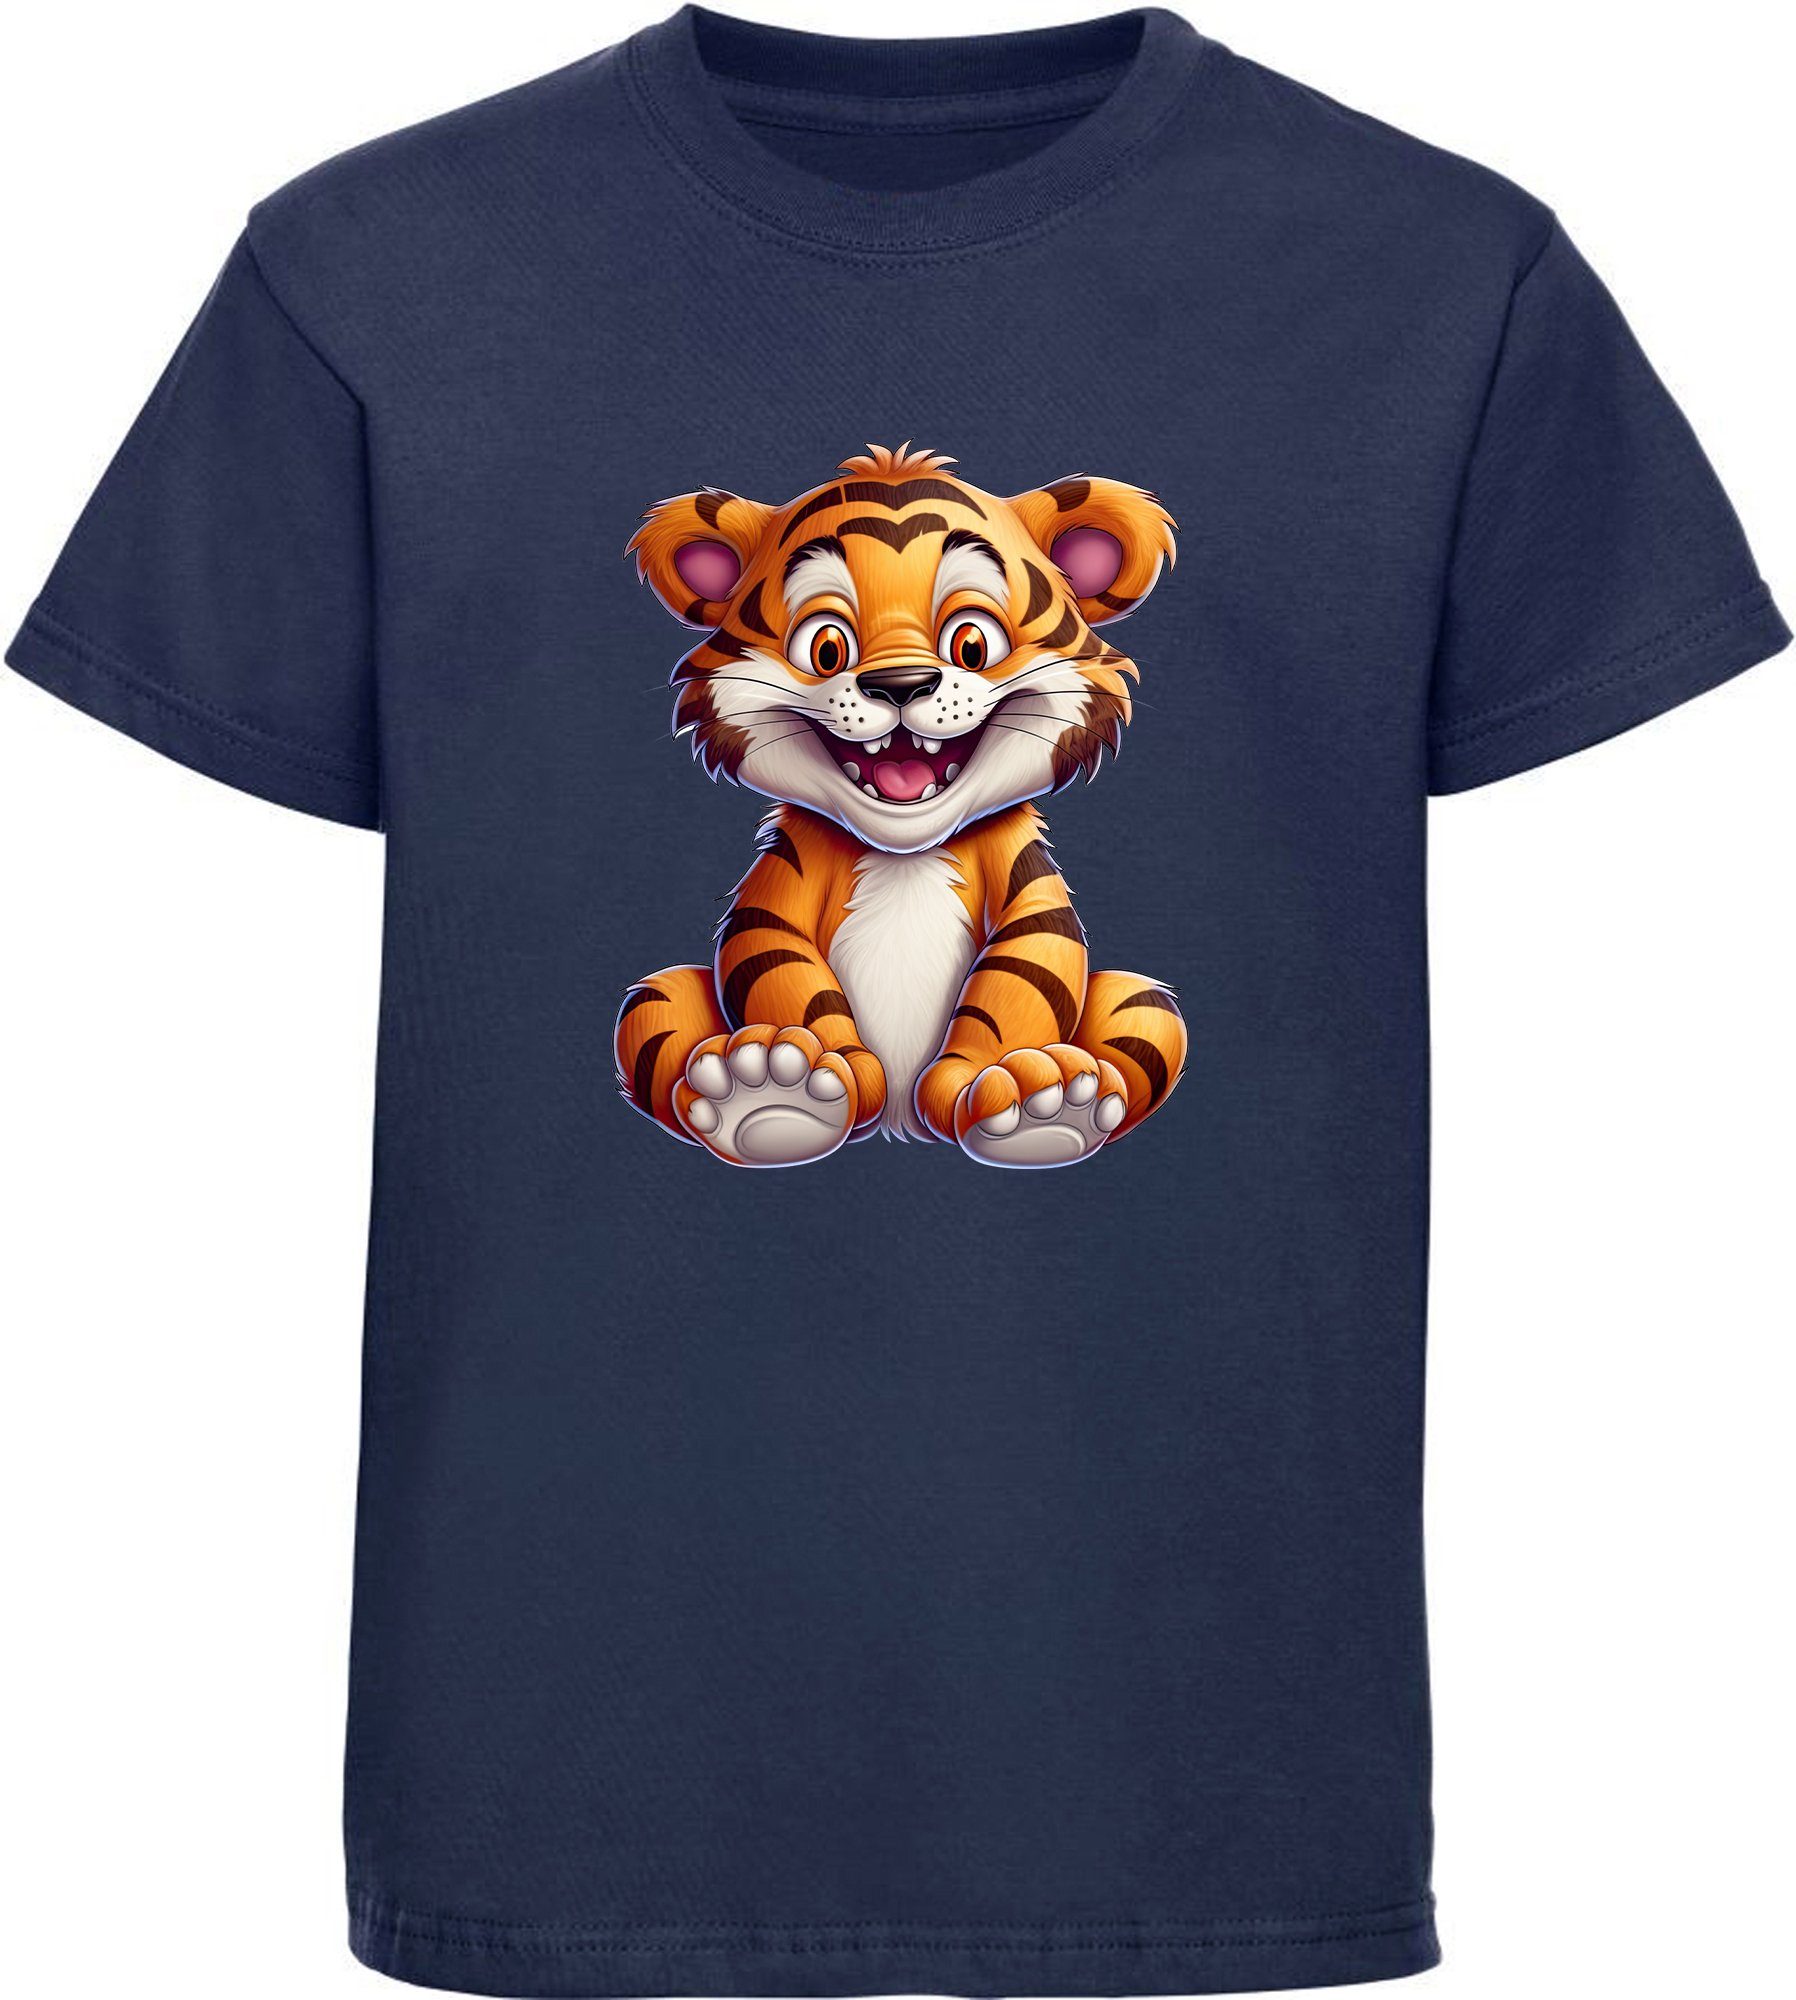 MyDesign24 T-Shirt Kinder i278 Baby Shirt mit Aufdruck, navy blau Wildtier Tiger - Baumwollshirt Print bedruckt